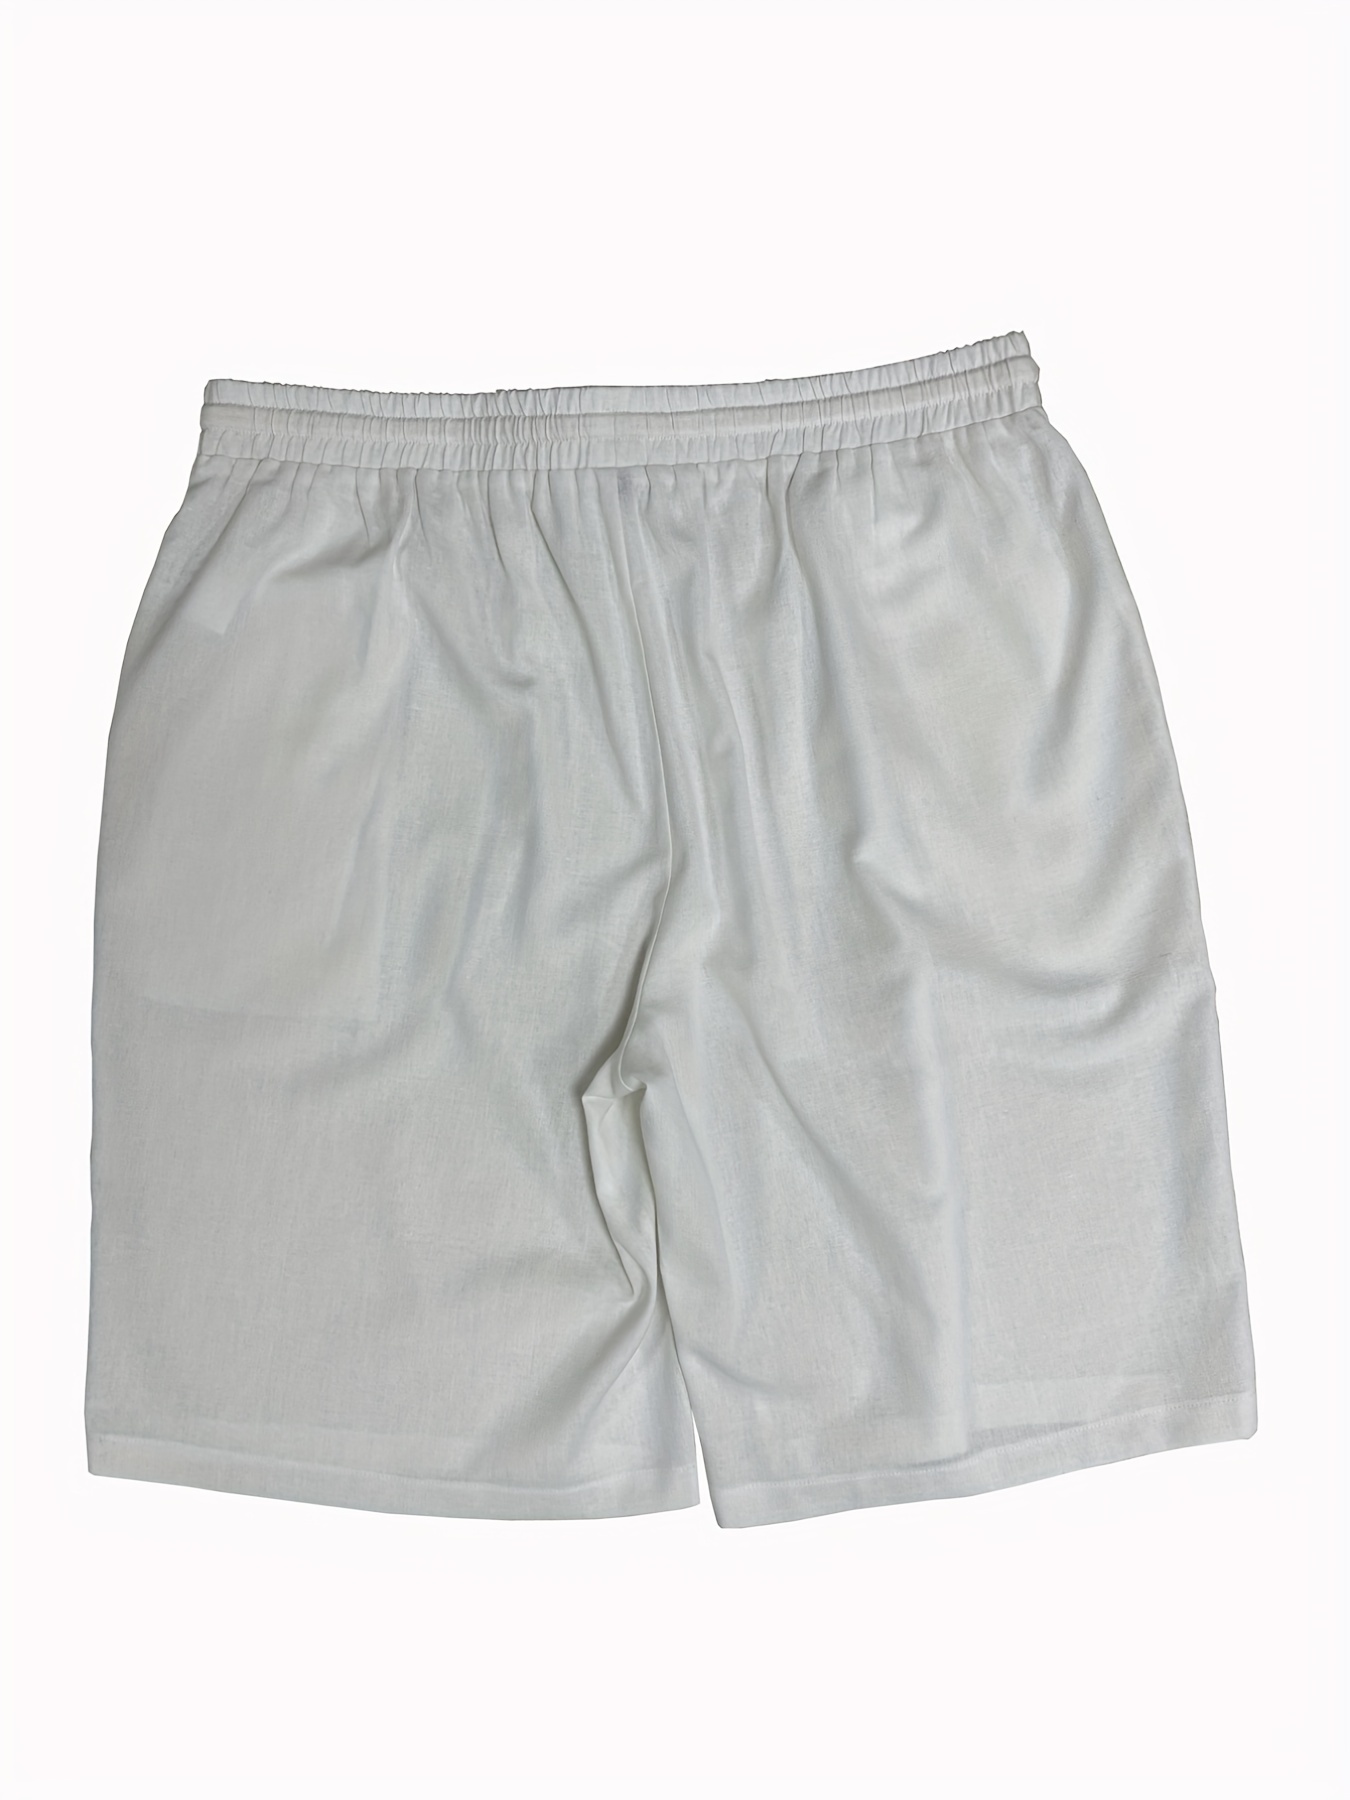 pantalones cortos deportivos para hombre blank